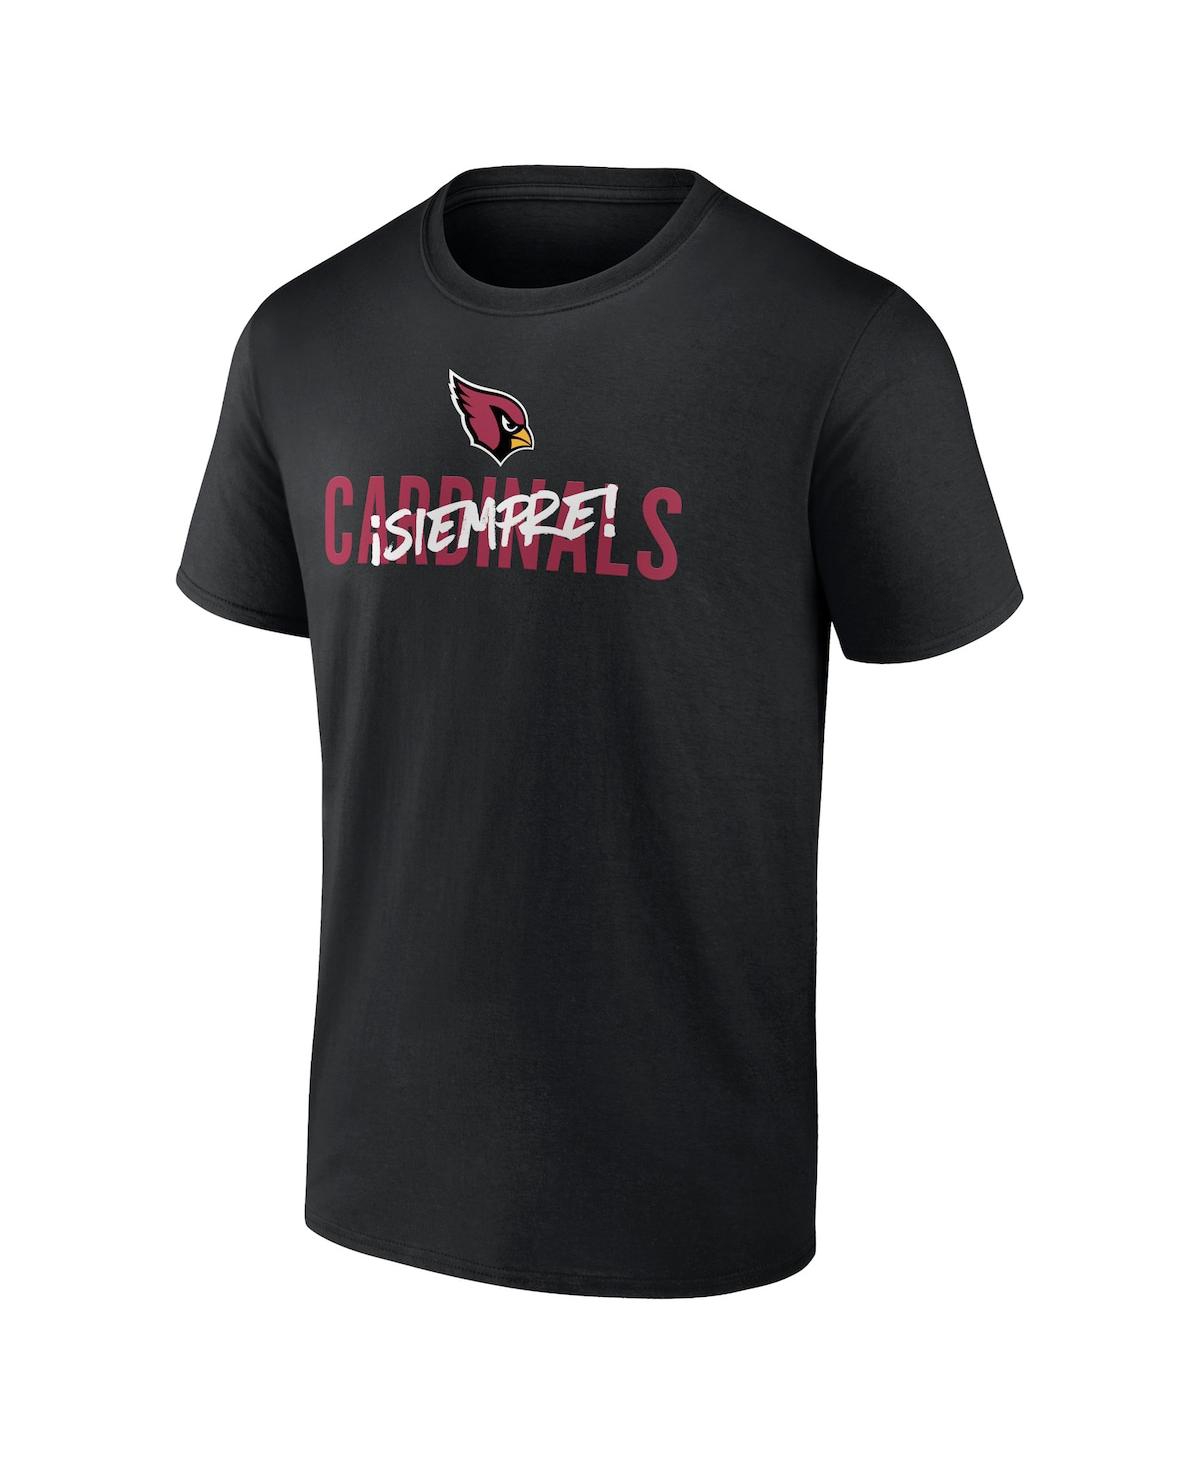 Shop Fanatics Men's  Black Arizona Cardinals Siempre T-shirt